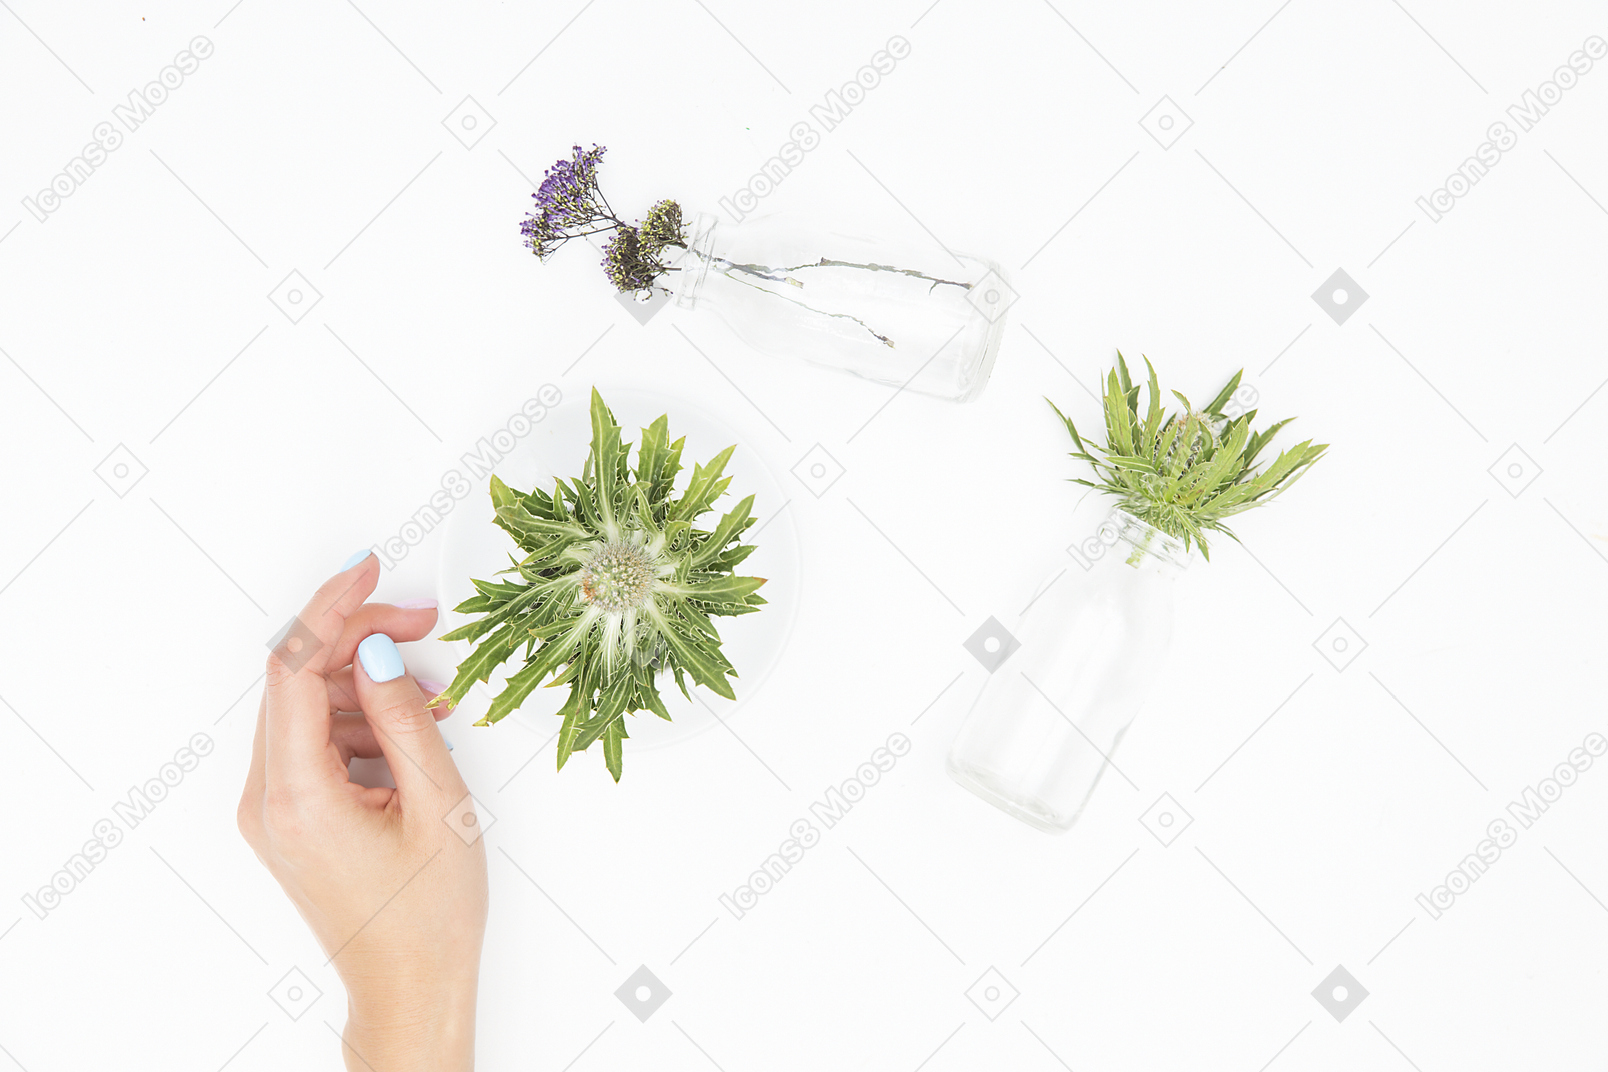 Mano femminile accanto ai diversi oggetti in vetro e piante verdi